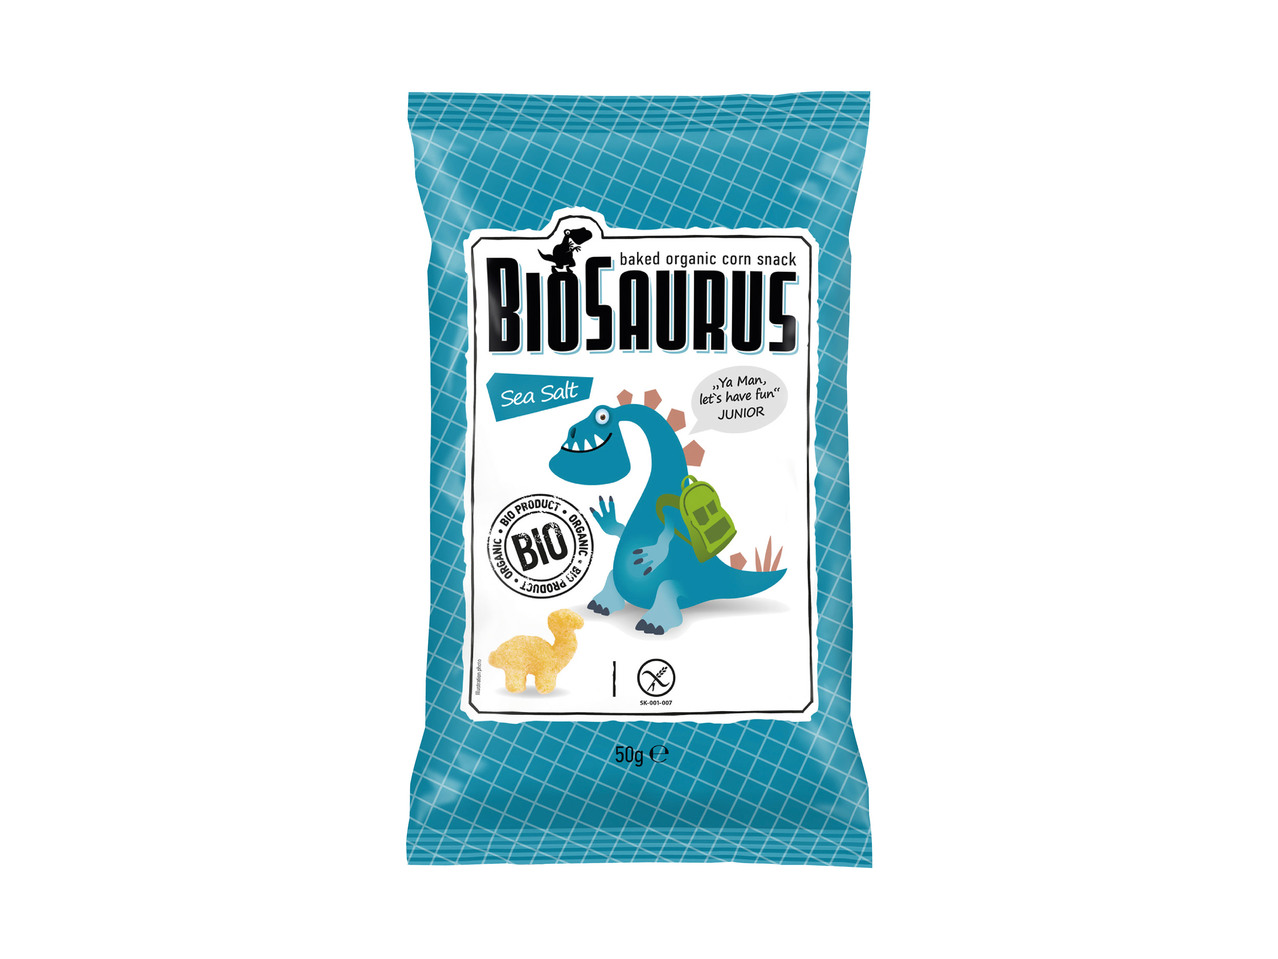 Biosaurus snack